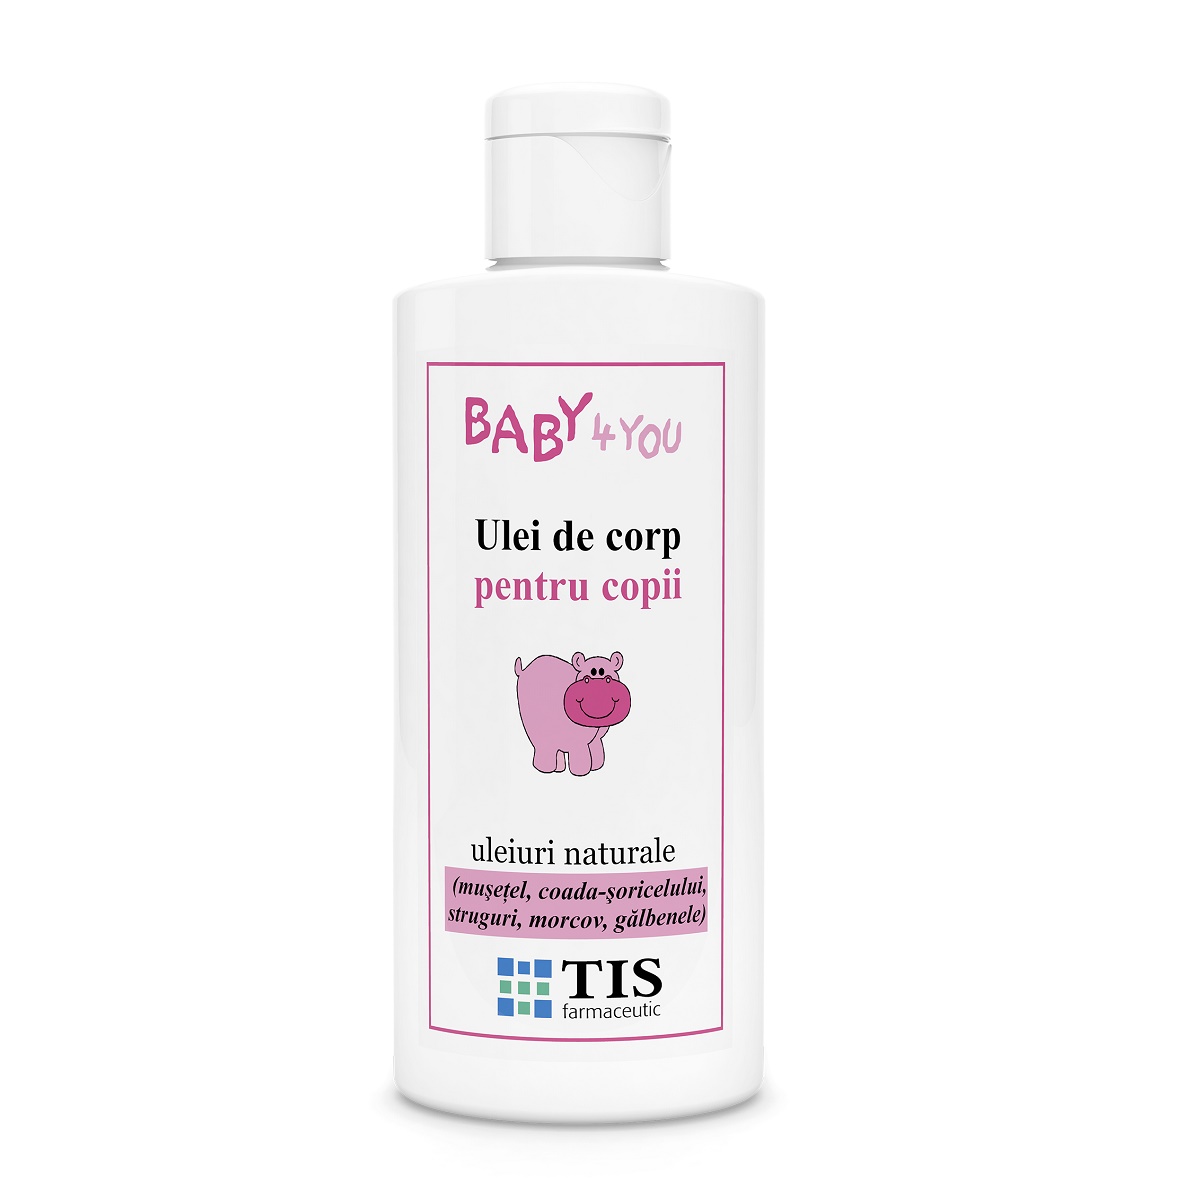 Ulei de corp pentru copii Baby 4 You, 100 ml, Tis Farmaceutic